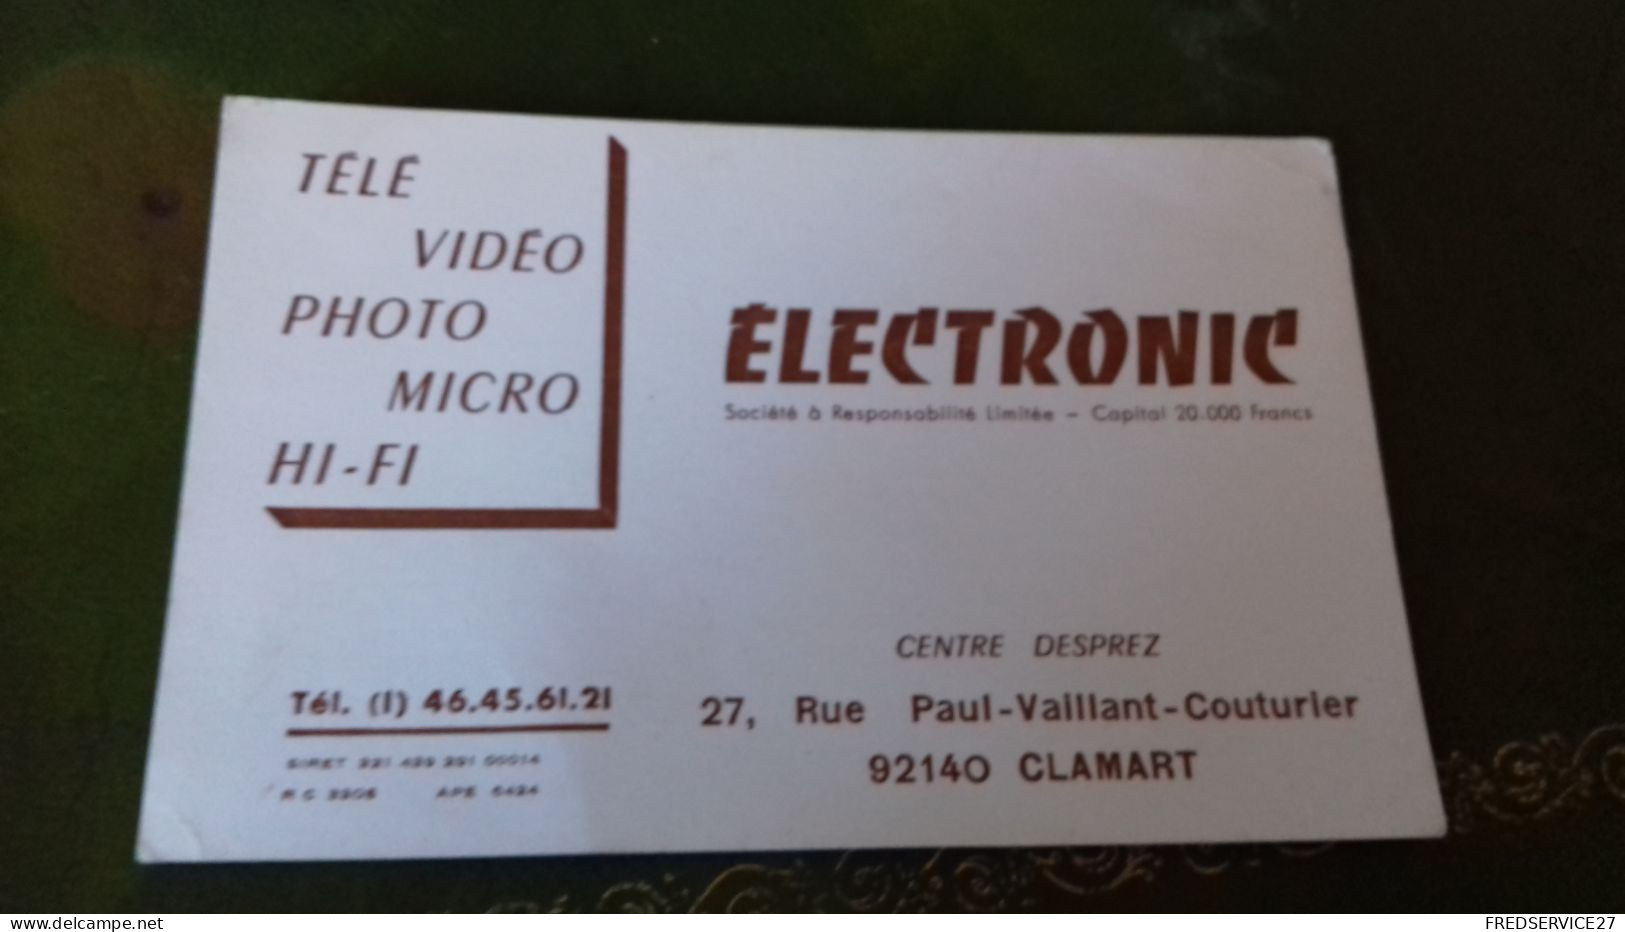 236/ CARTE DE VISITE ELECTRONIC CENTRE DESPRET CLAMART 92140 - Cartes De Visite